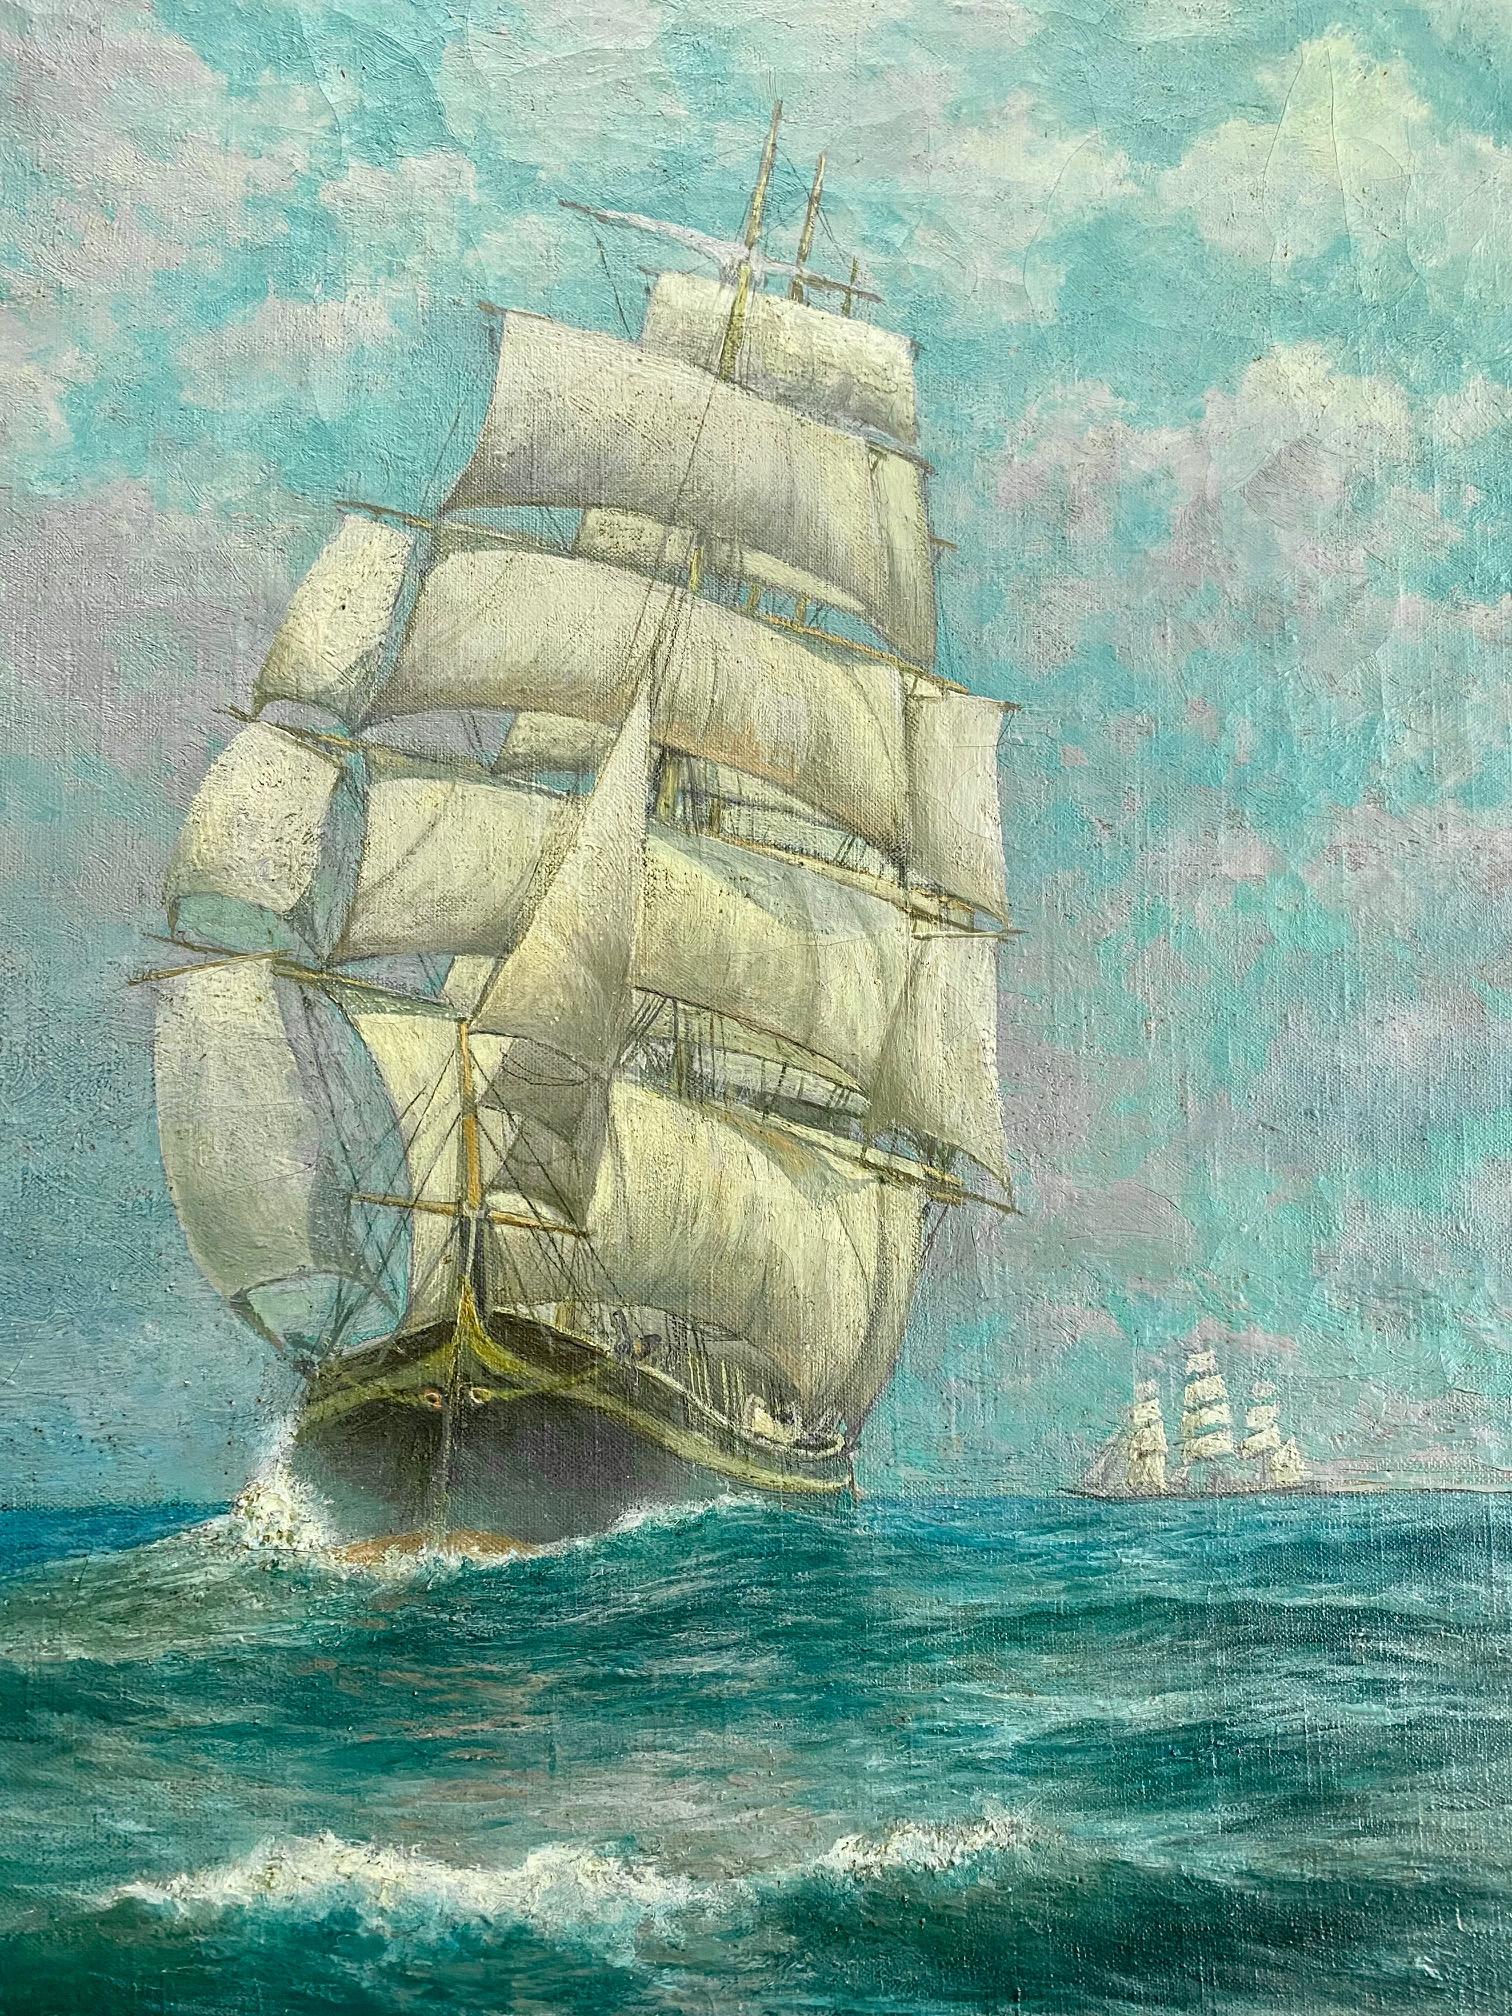 Seelandschaft mit Klipperschiff von George Howell Gay (Amerikaner: 1858 - 1931), um 1890, Öl auf Leinwand, Bugansicht eines Klipperschiffs unter vollen Segeln, mit gesetzten Stun'sls und Skysails, auf lebhafter See unter blauem Wolkenhimmel, mit